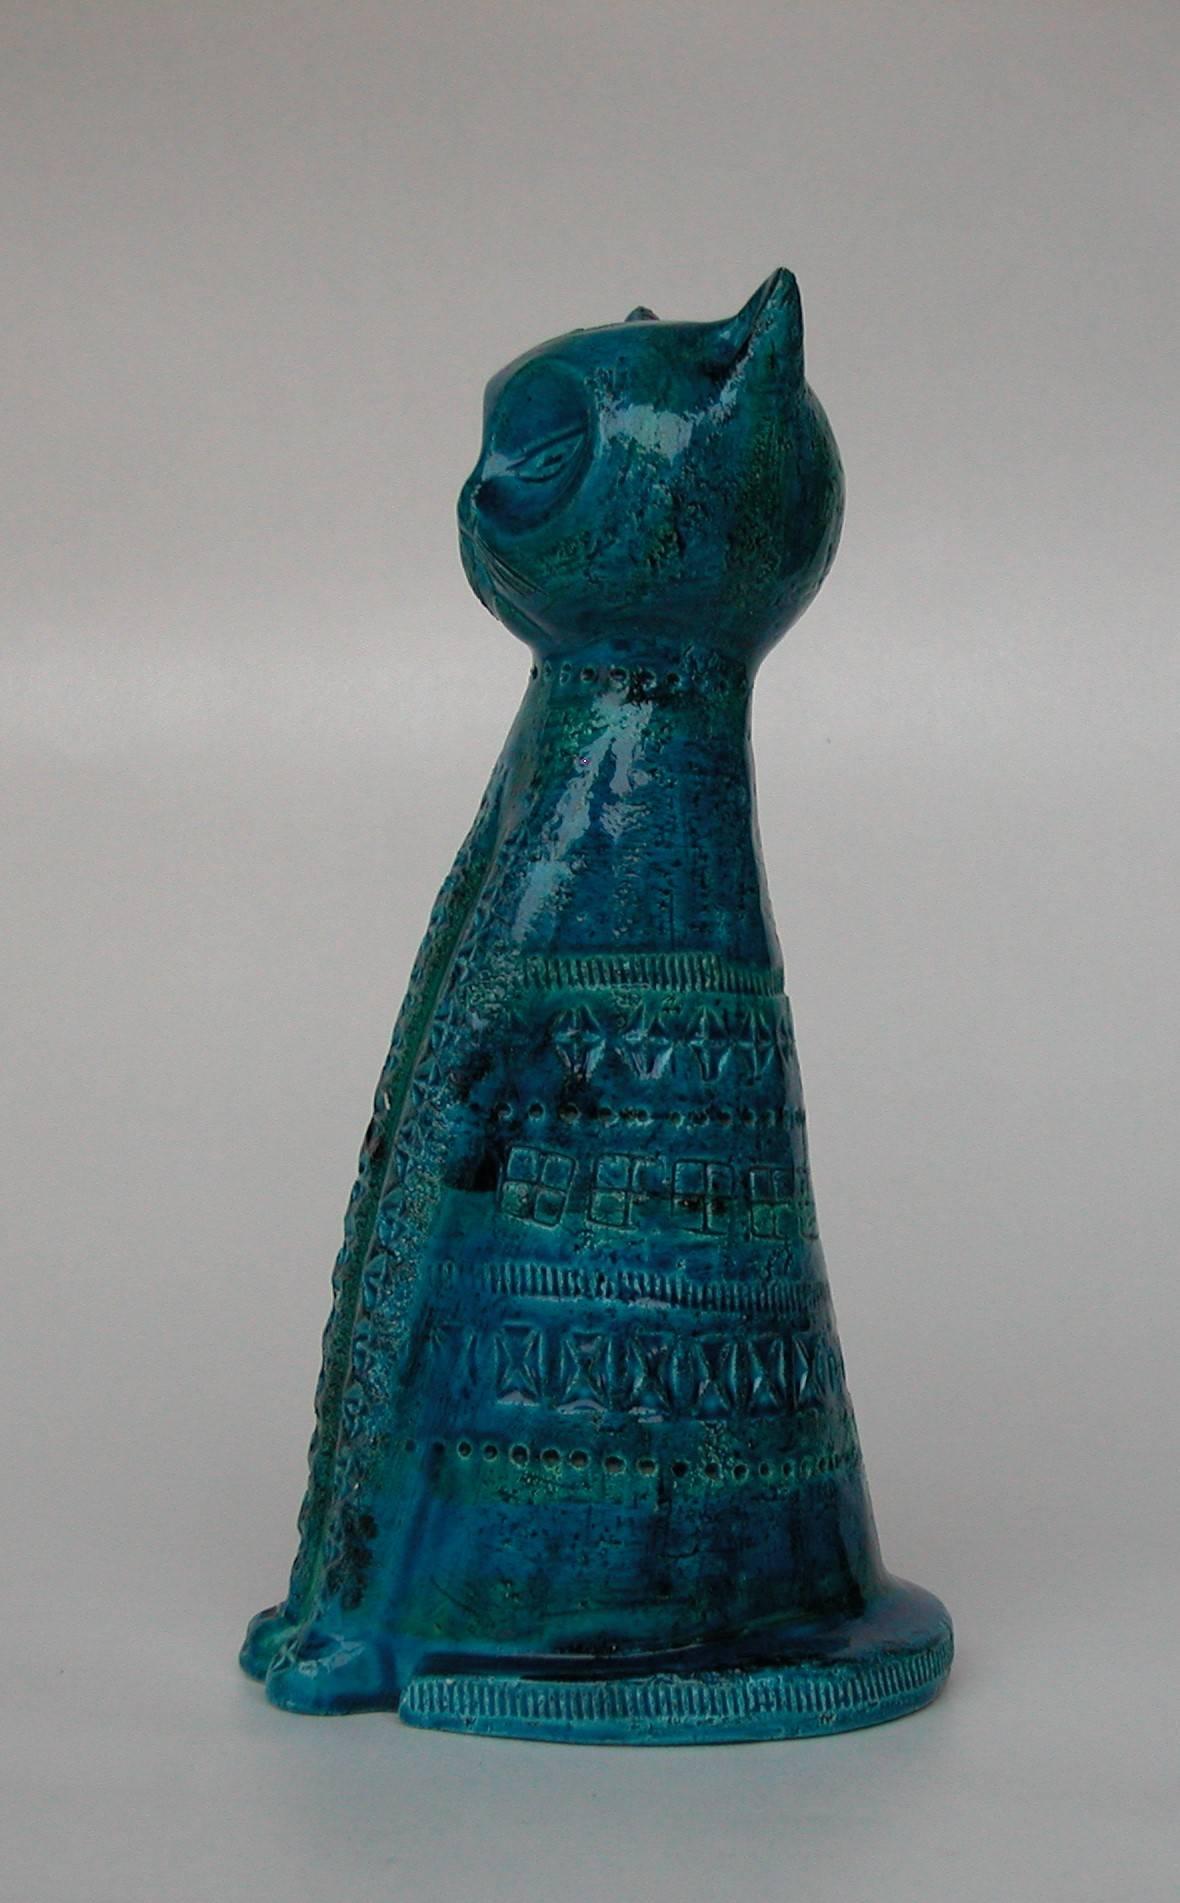 Italian ceramic cat sculpture from the Rimini Blue series.